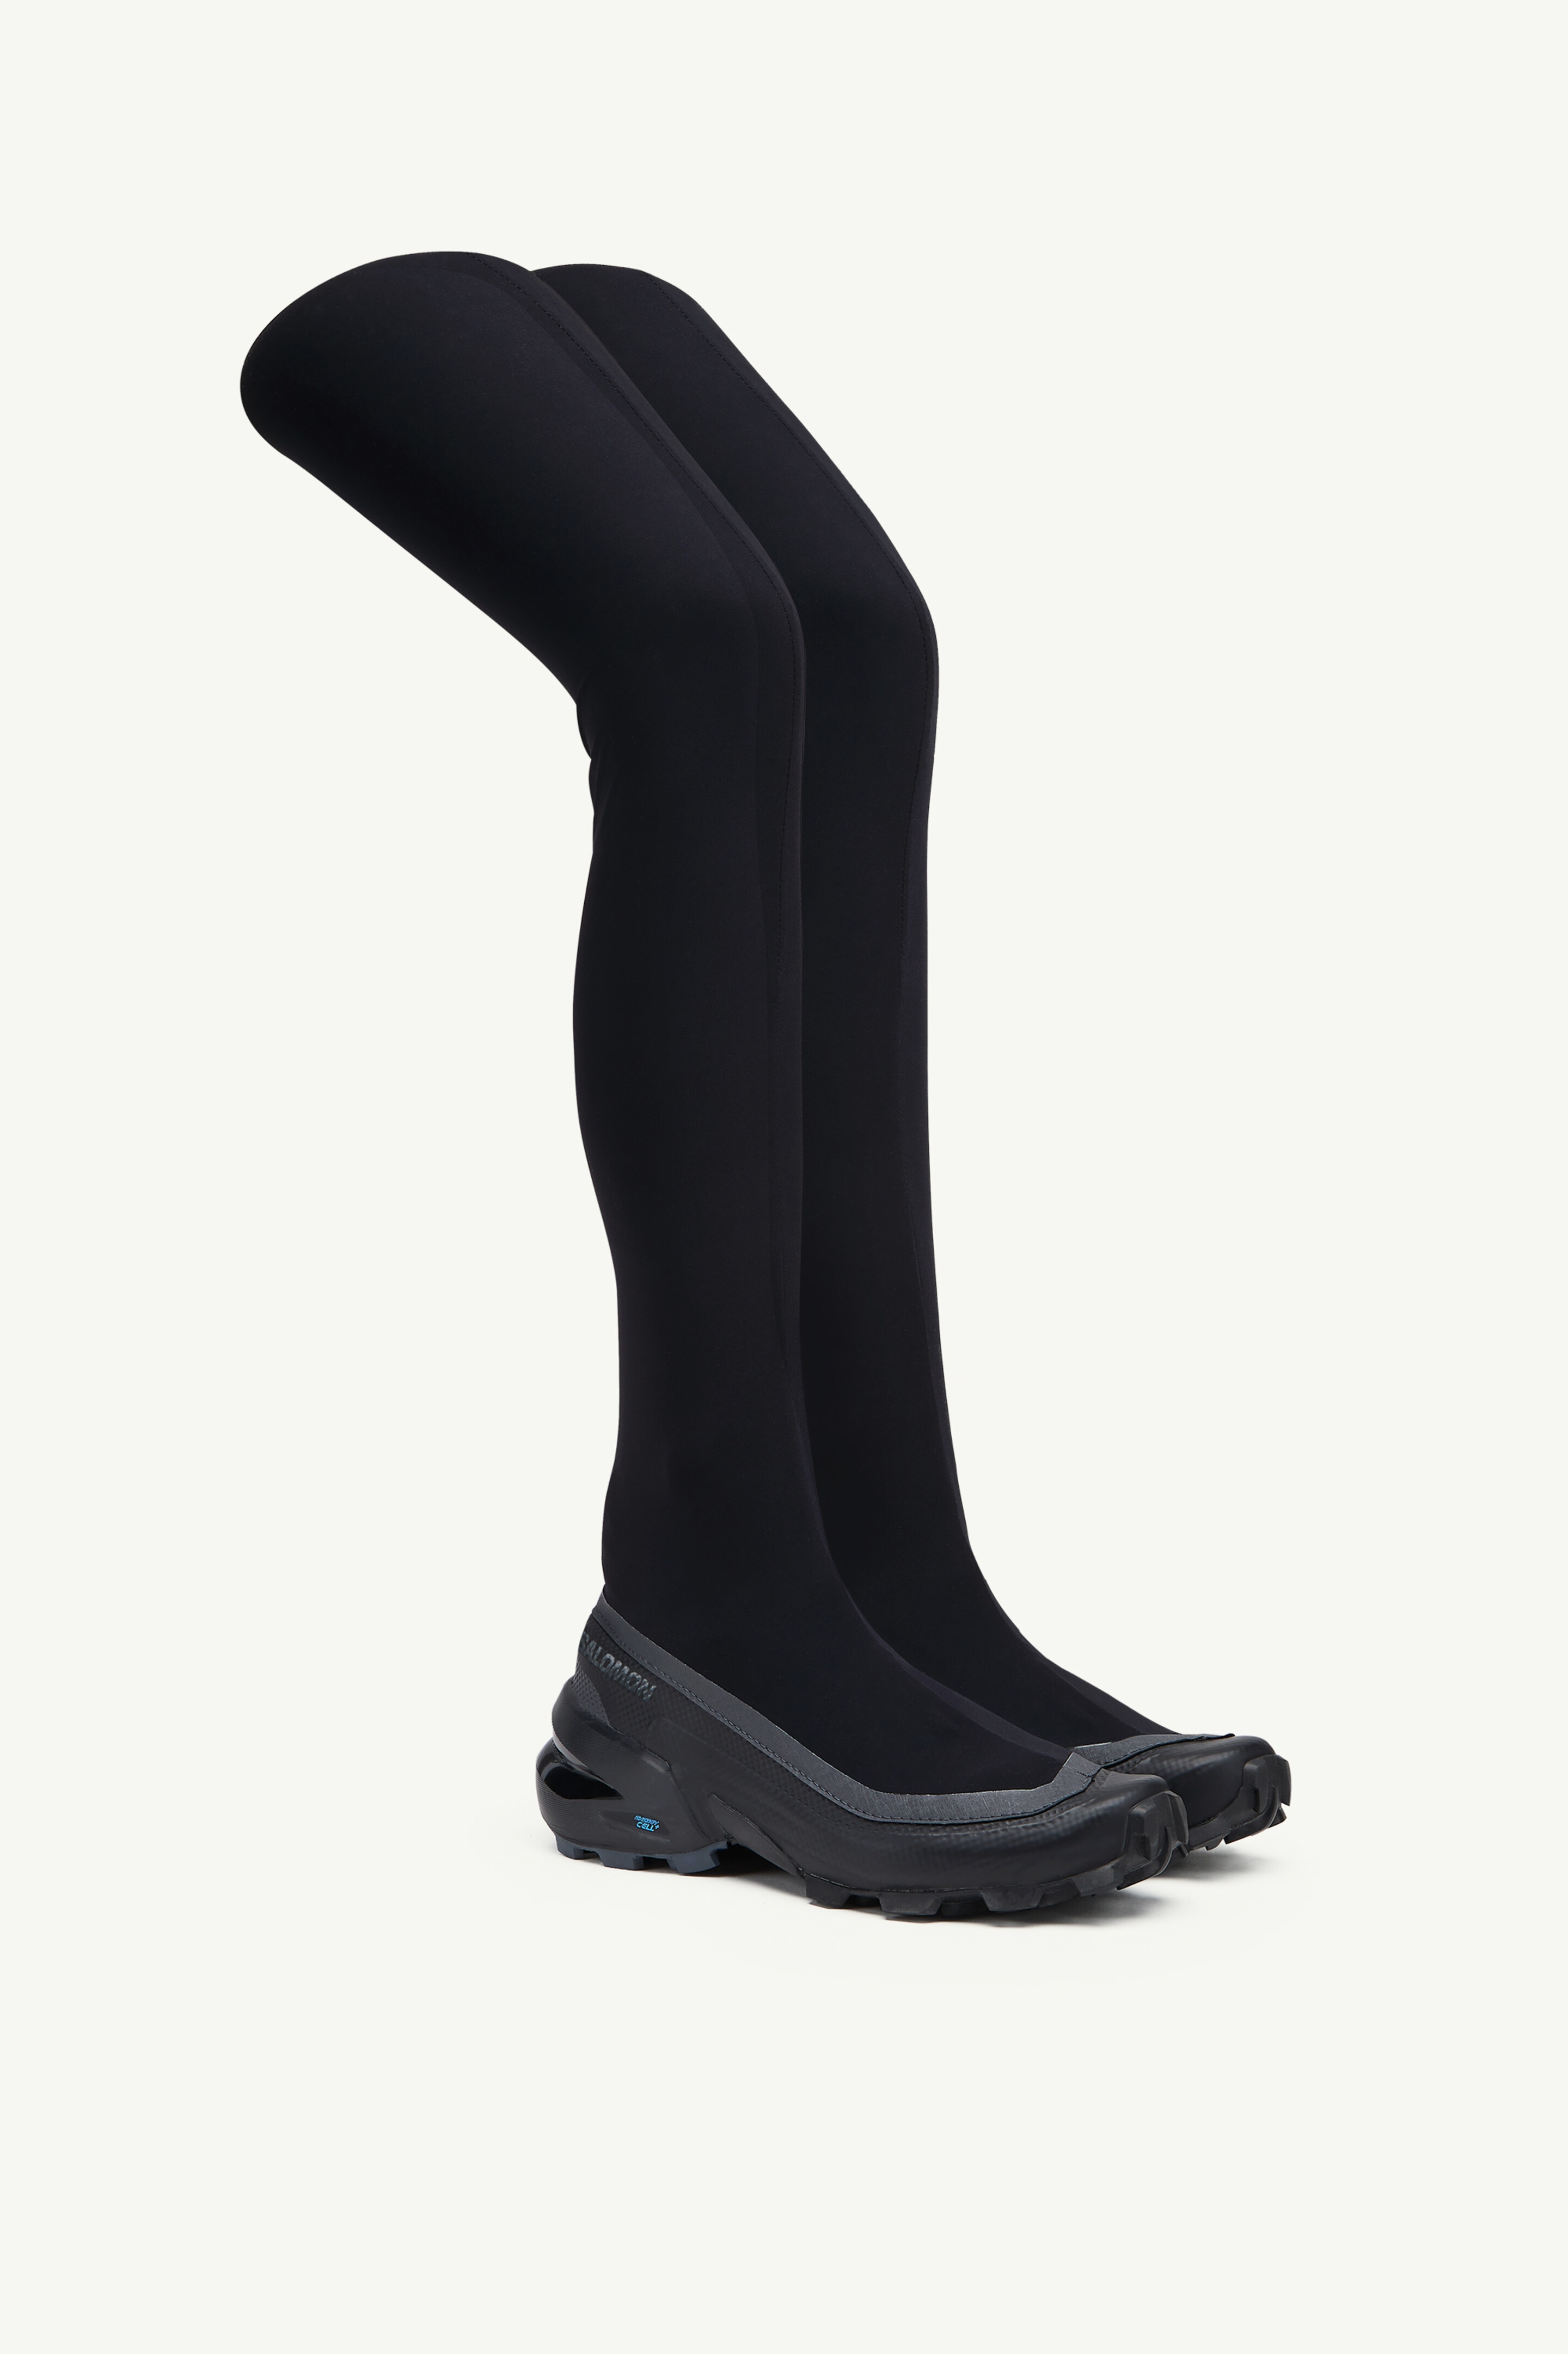 Salomon thigh high boot - 2